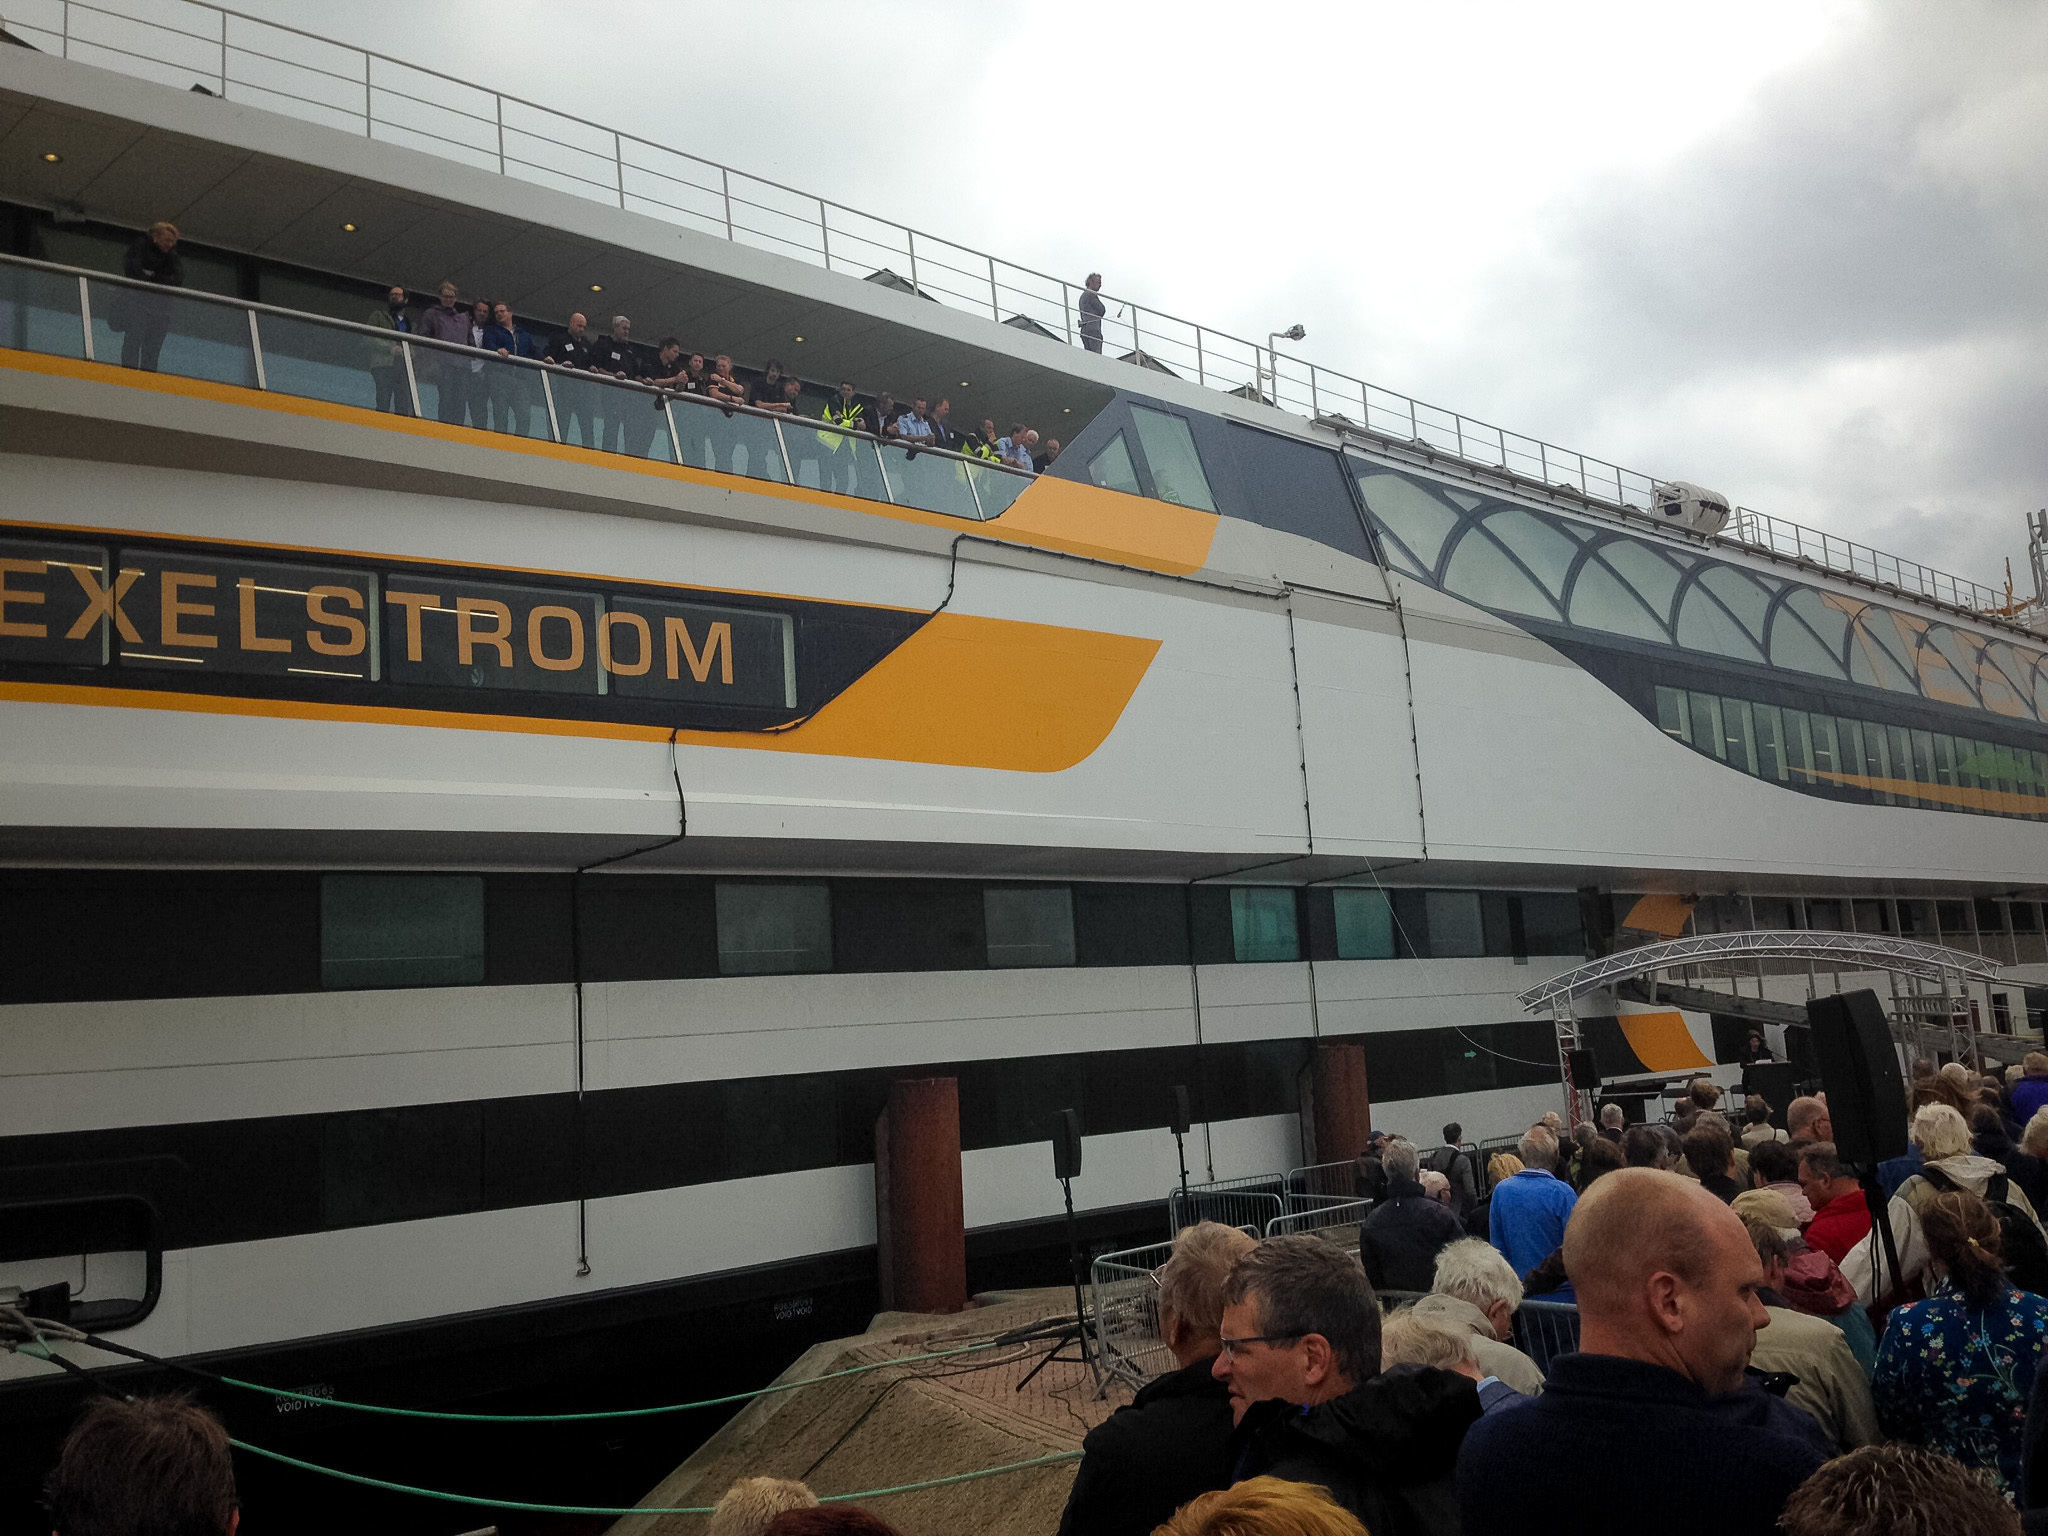 Teso Veerboot “Texelstroom” overgedragen